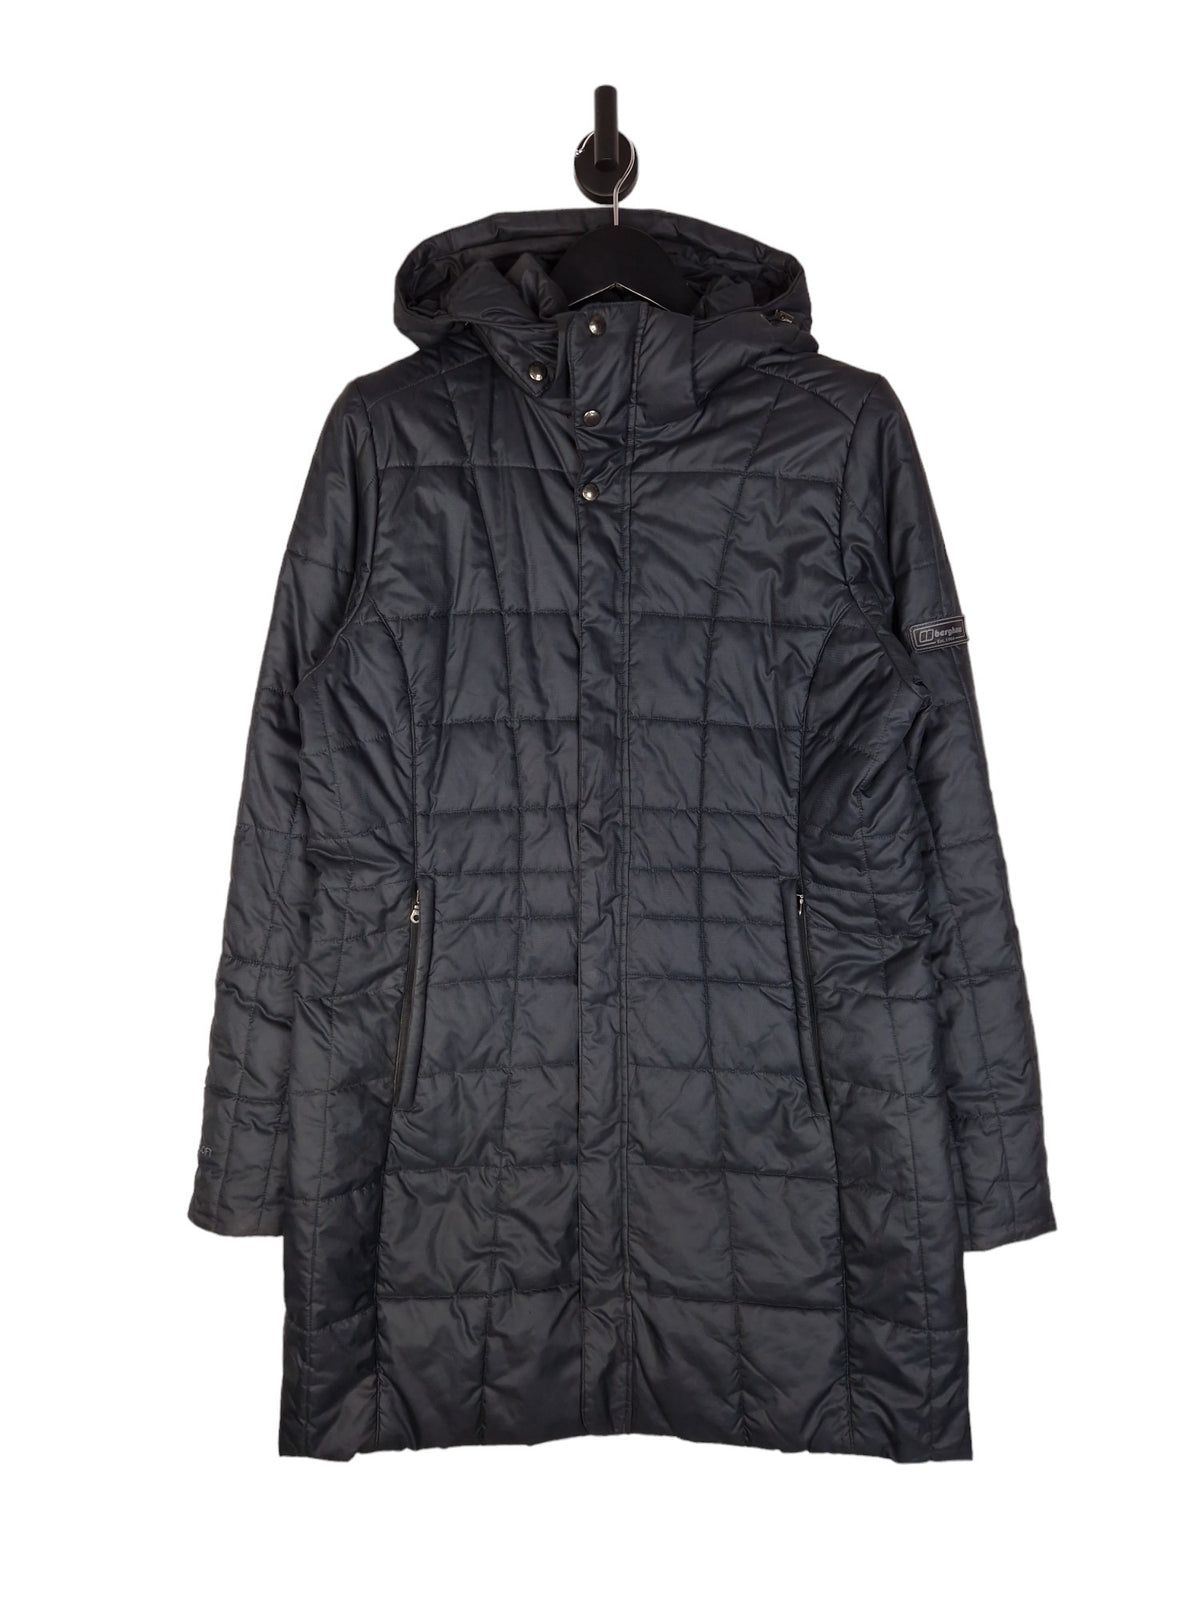 Berghaus Long Puffer Jacket - Size UK 16